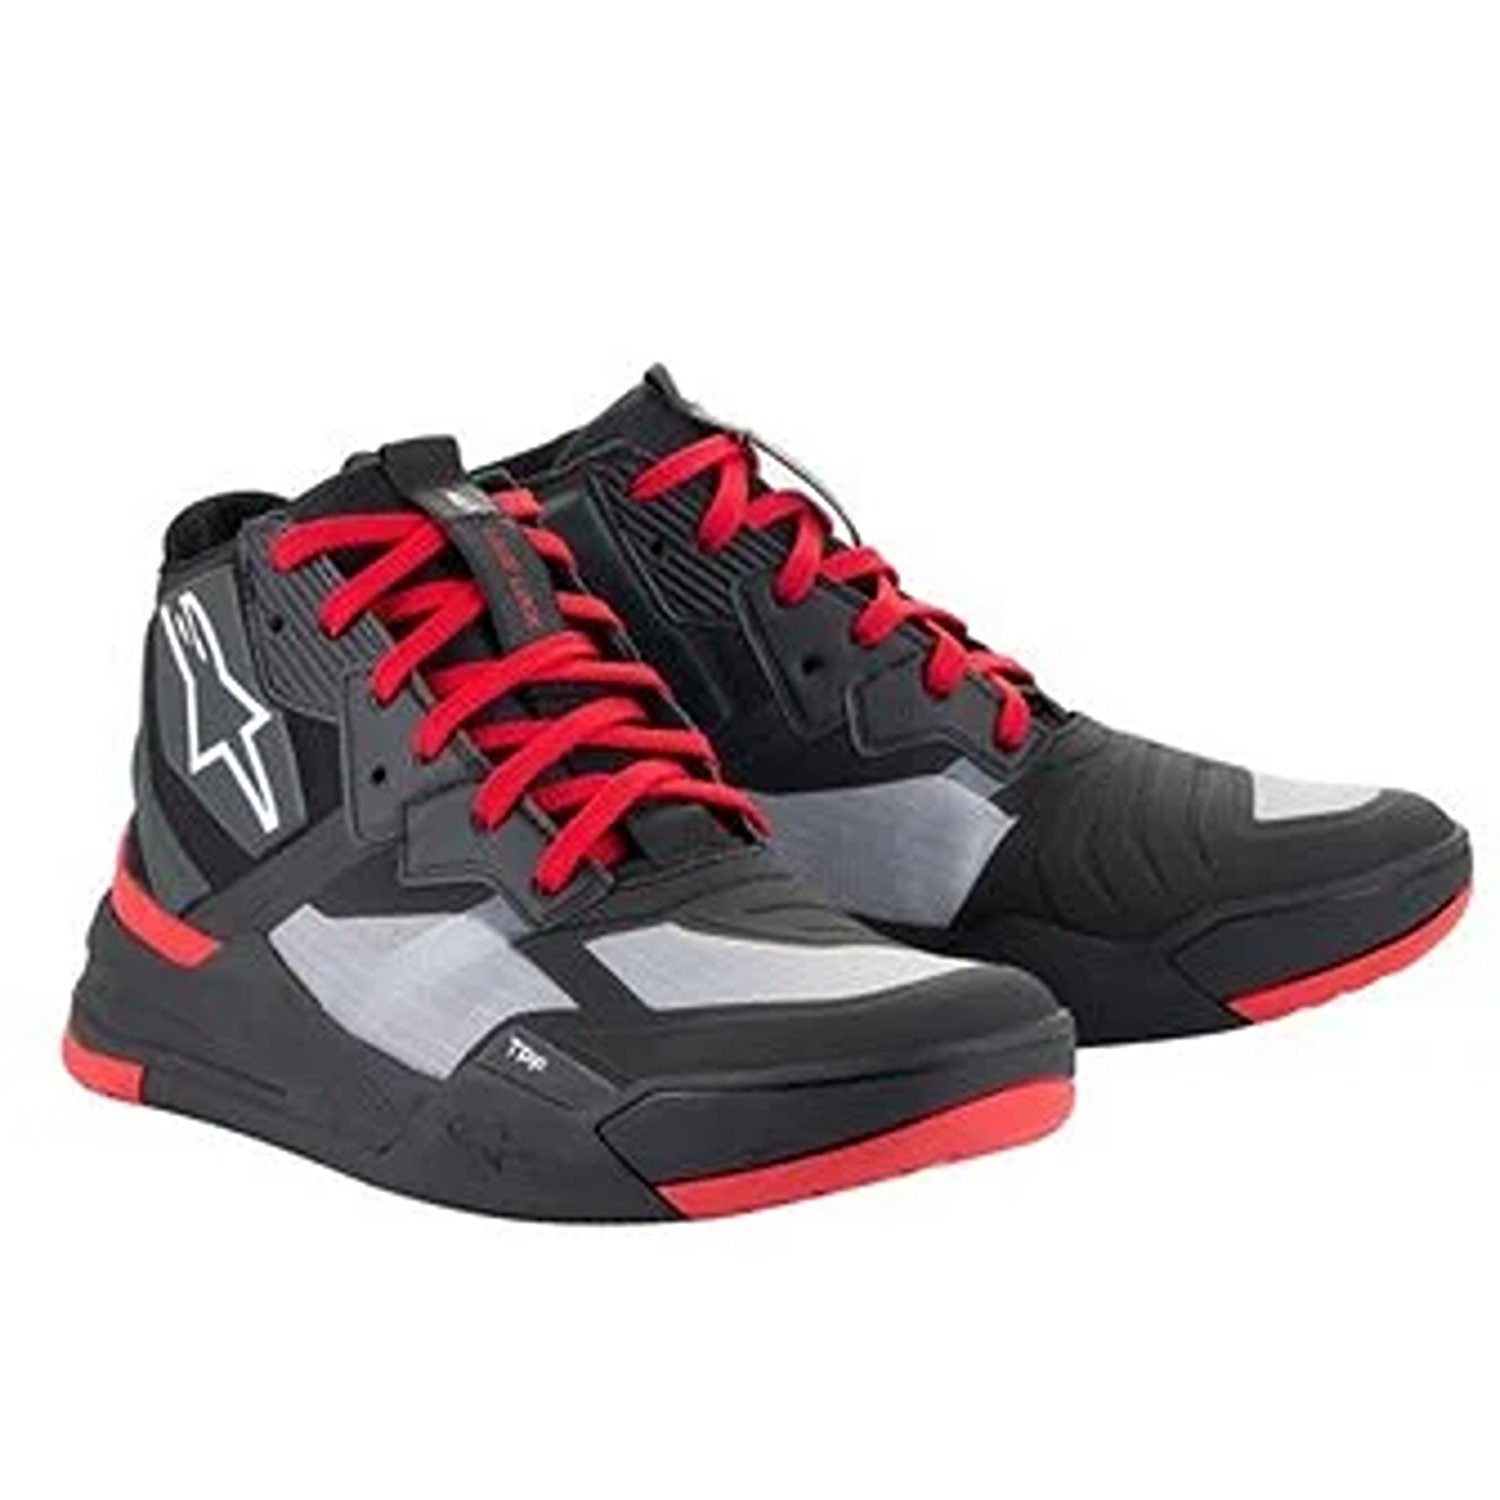 Image of Alpinestars Speedflight Shoes Black Bright Red White Größe US 12